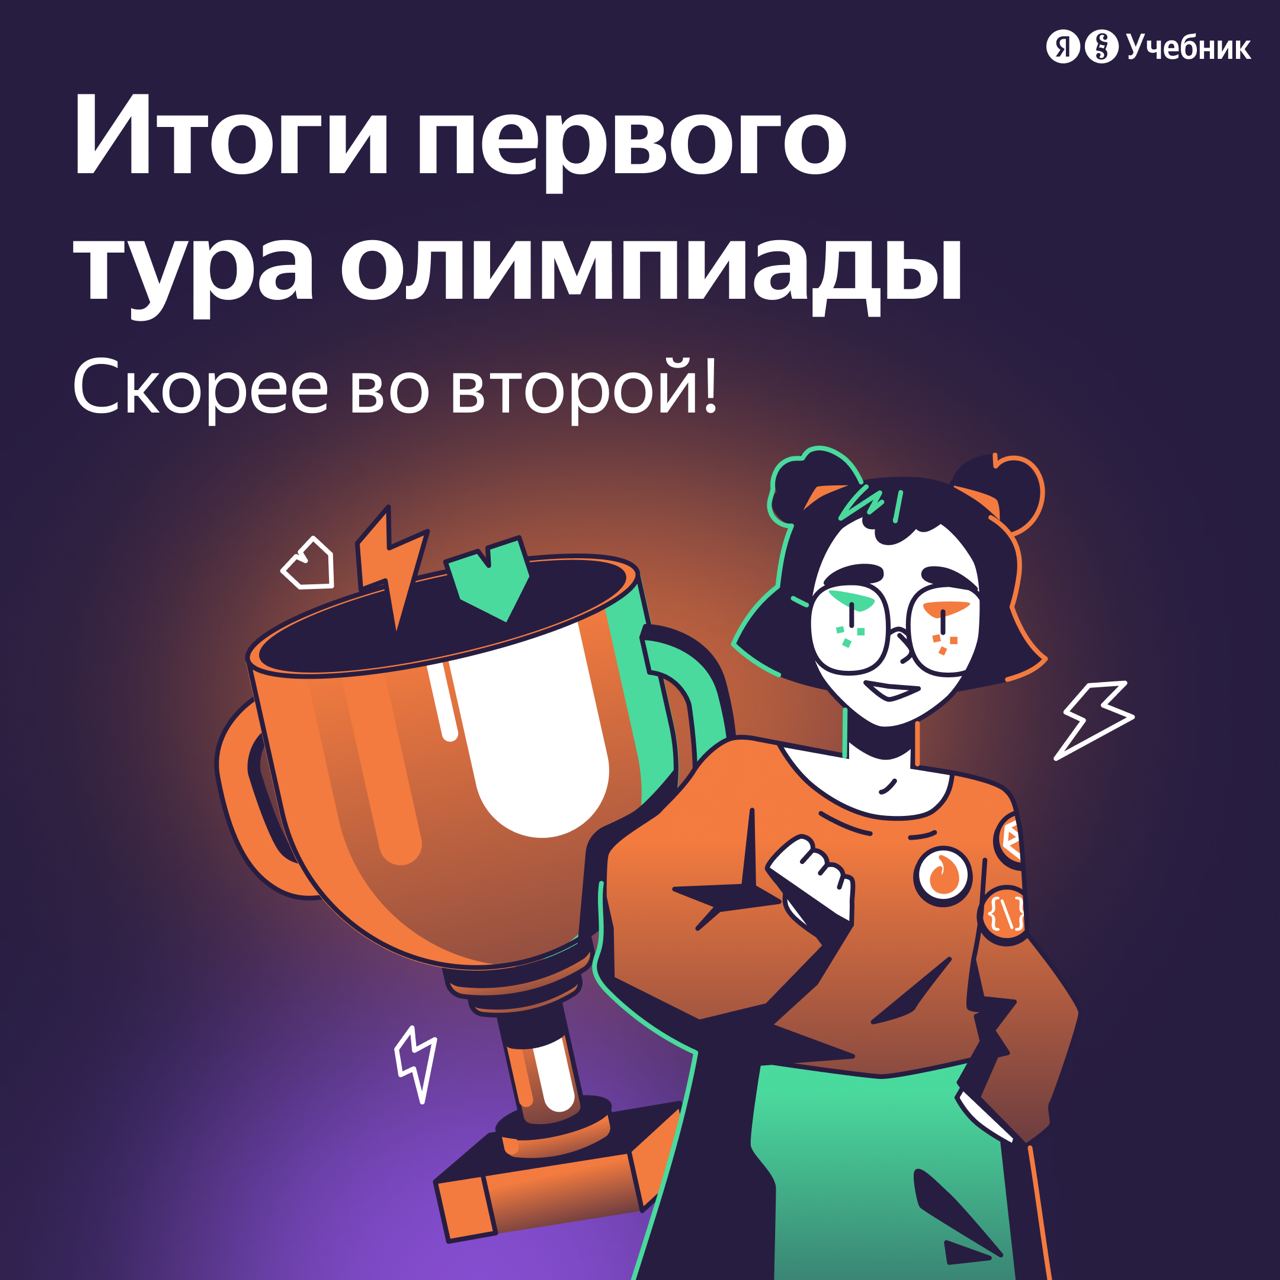 Итоги первого тура олимпиады по информатике от Яндекс Учебника.